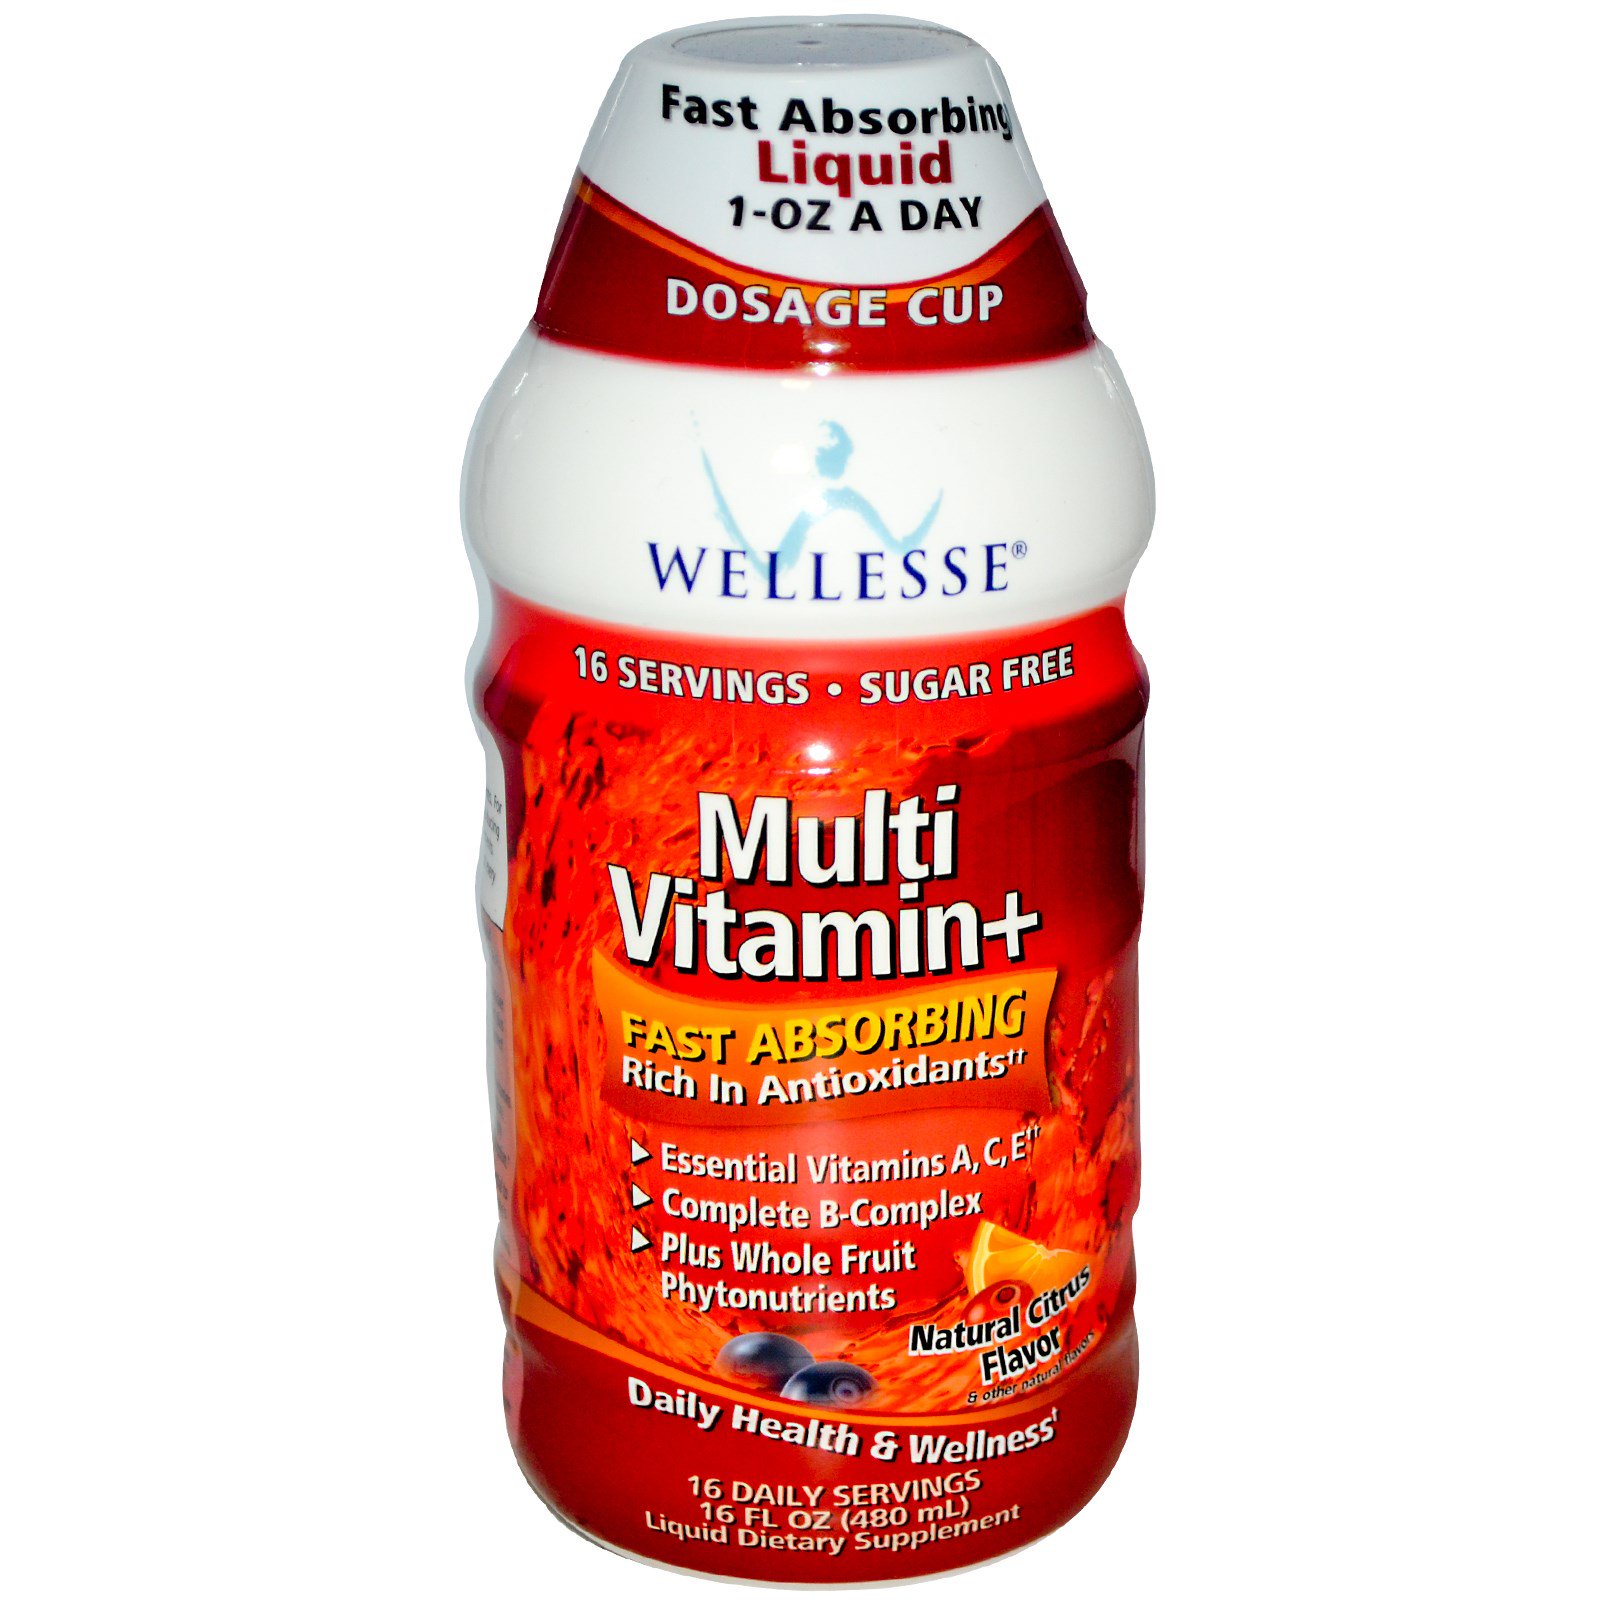 Wellesse Premium Liquid Supplements, Мультивитамины+, без сахара, натуральный аромат цитрусовых, 16 жидких унций (480 мл)